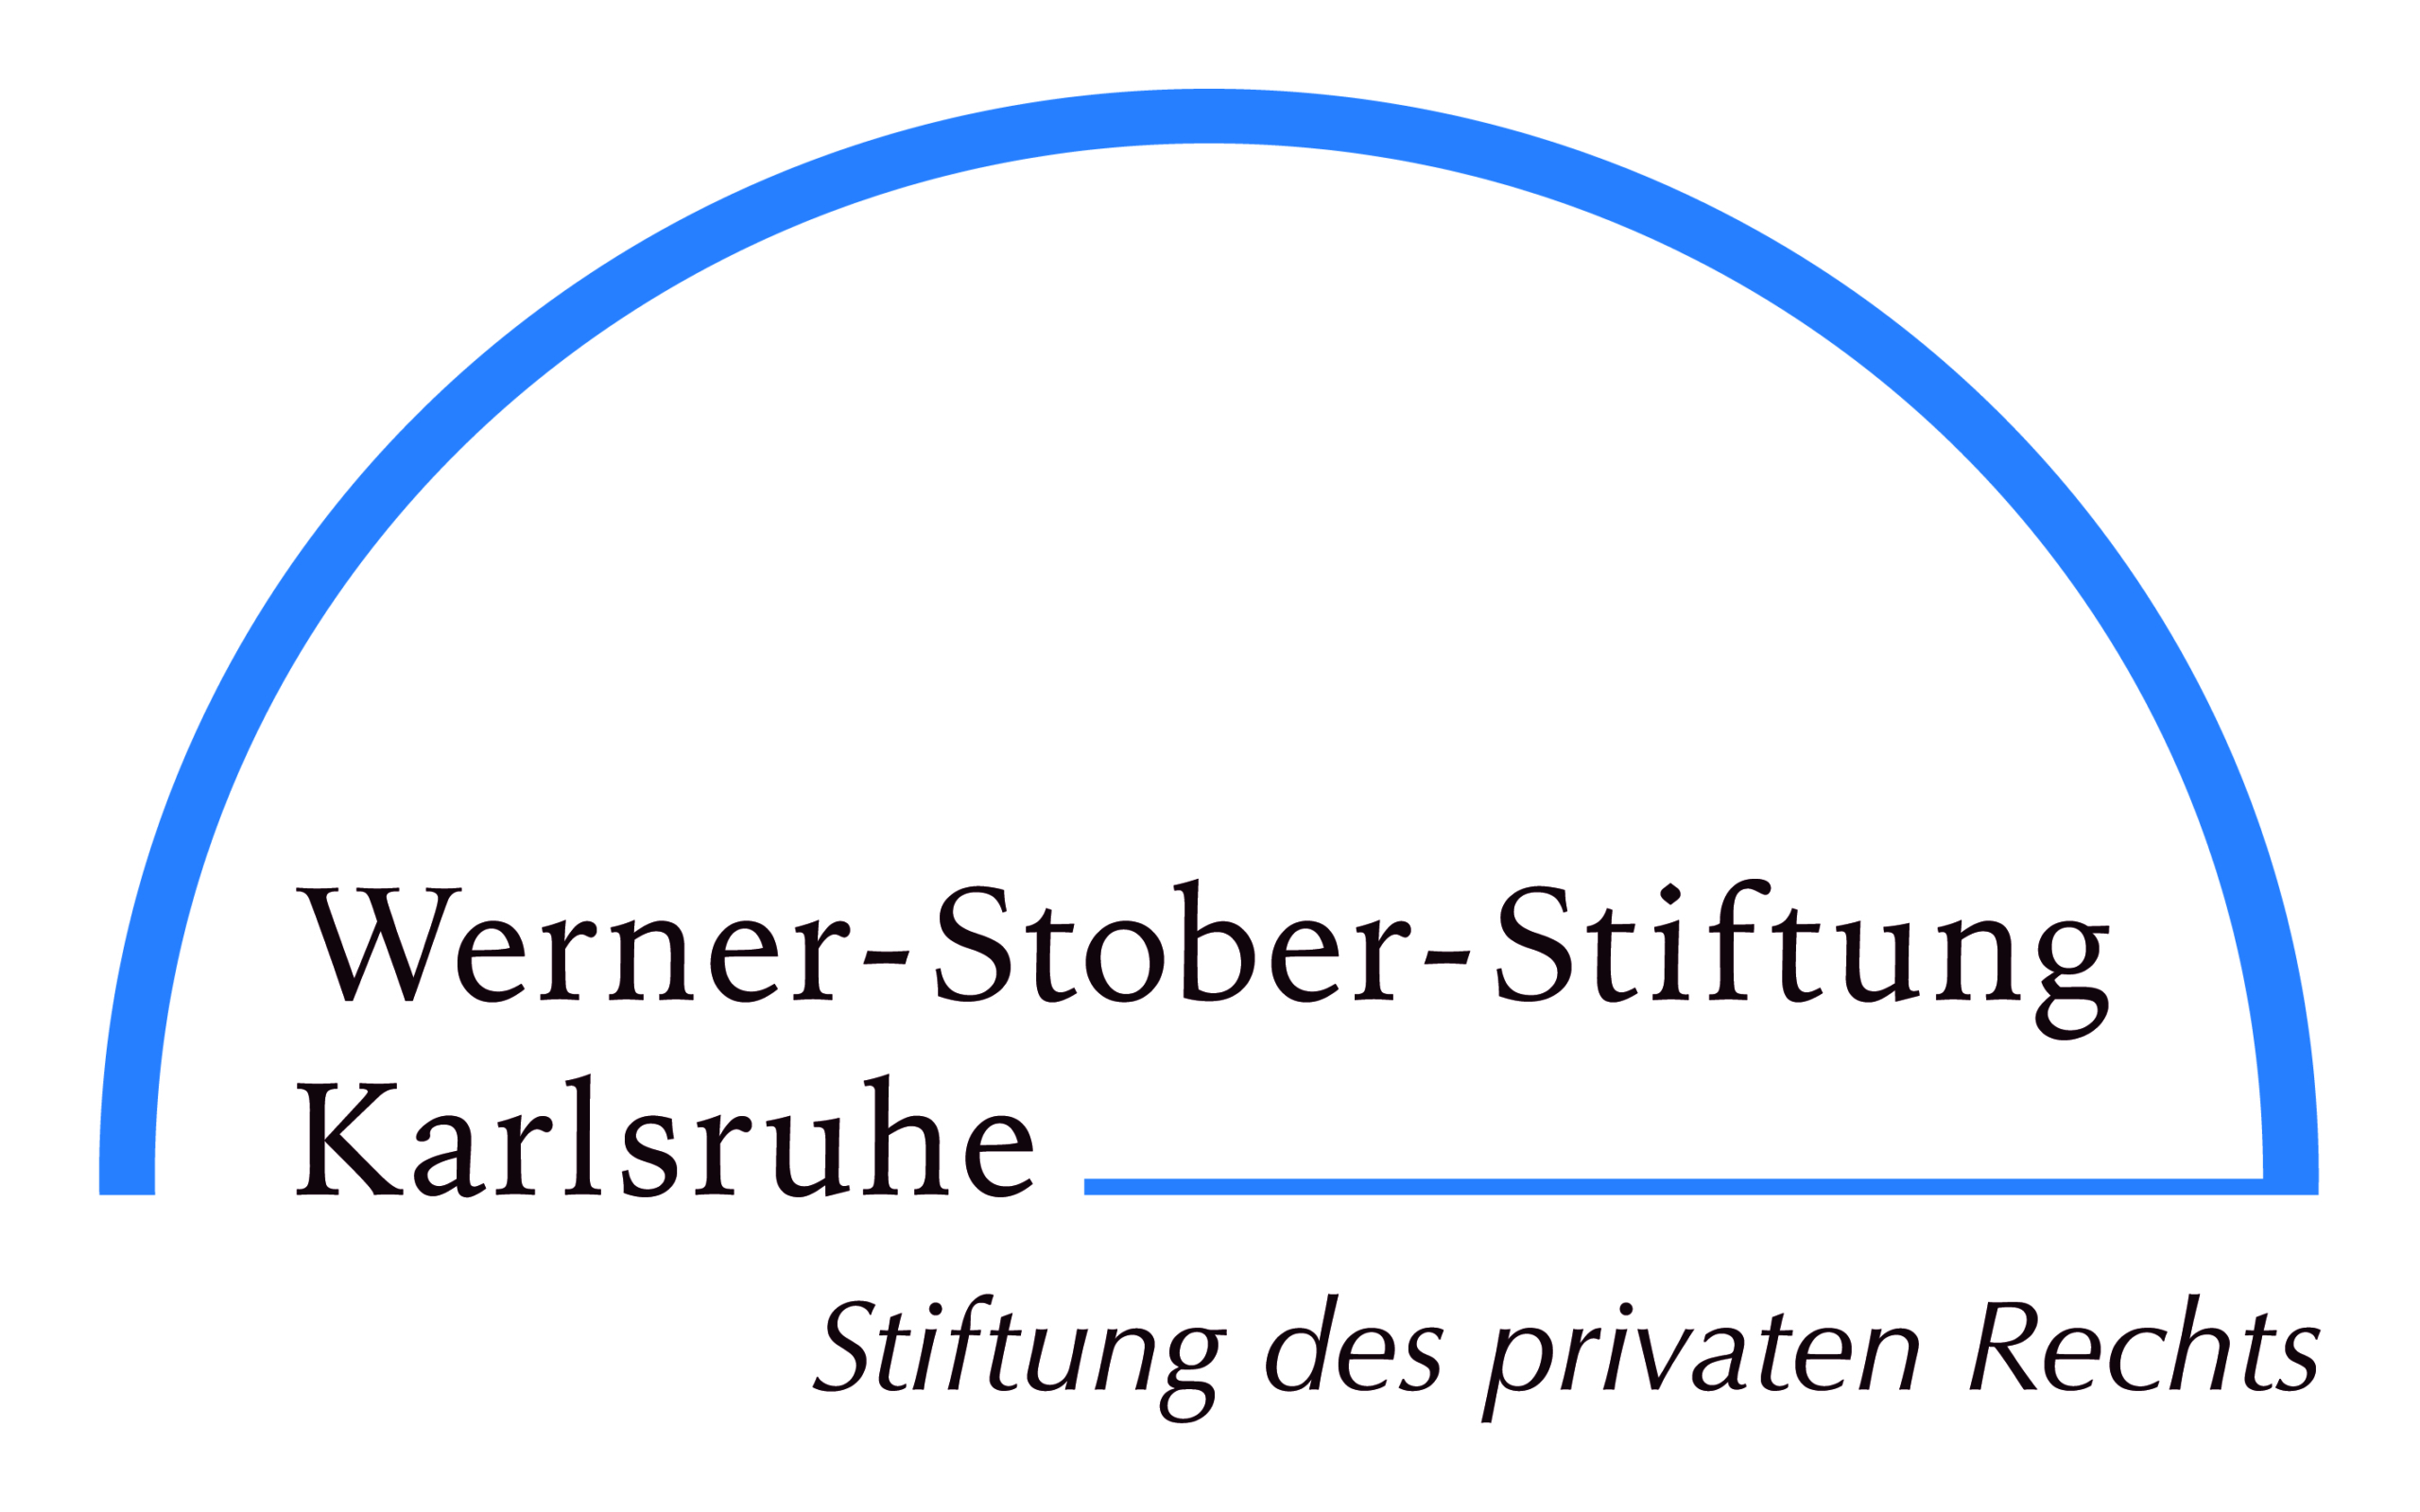 Werner-Stober-Stiftung Karlsruhe